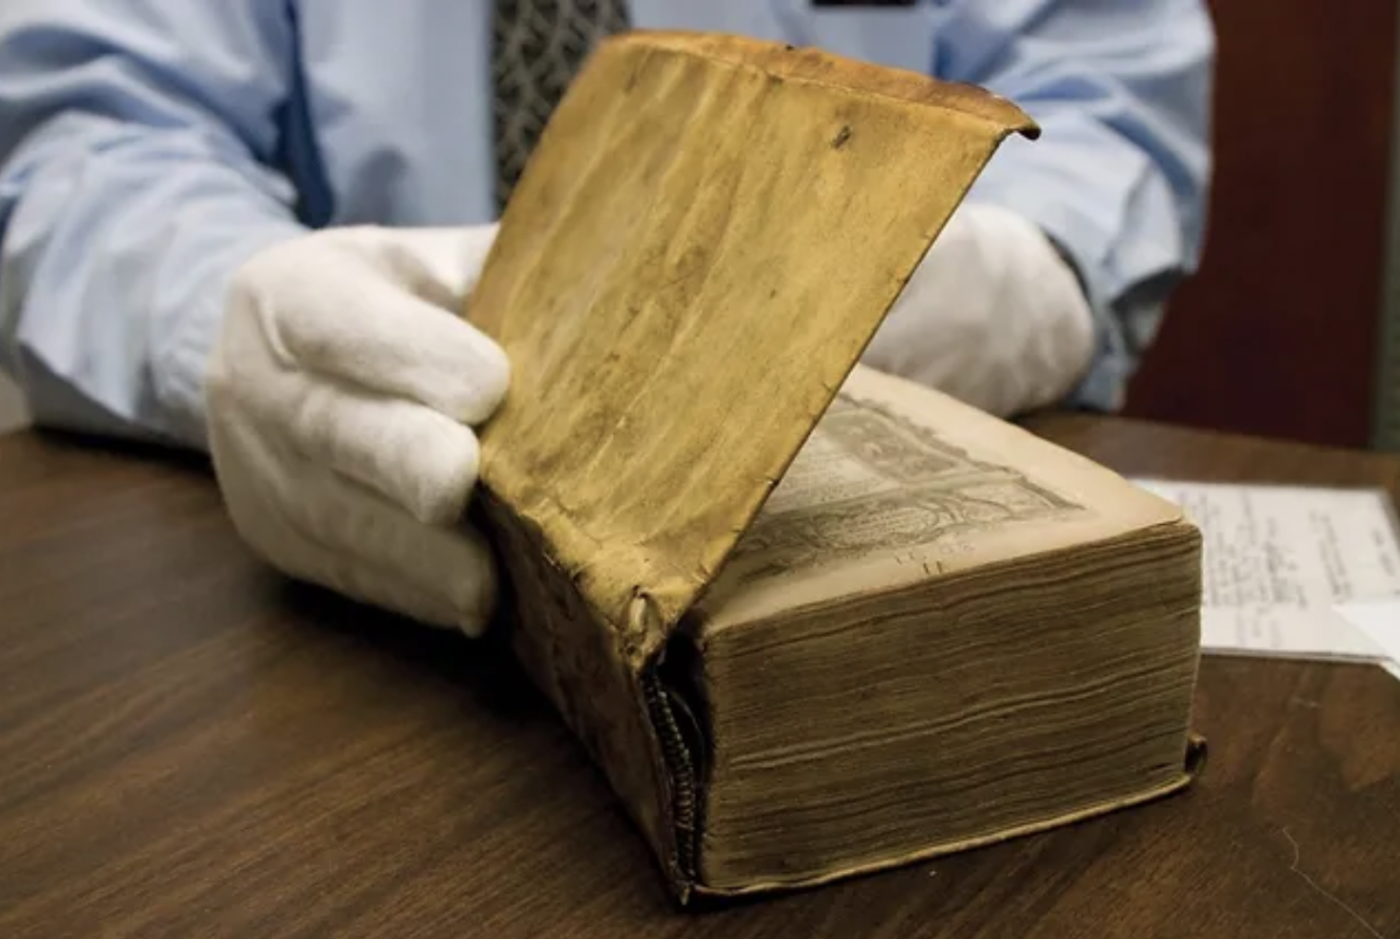 Livro encadernado com pele humana é exposto em feira de livros antigos em Nova York; obra custa R$ 230 mil